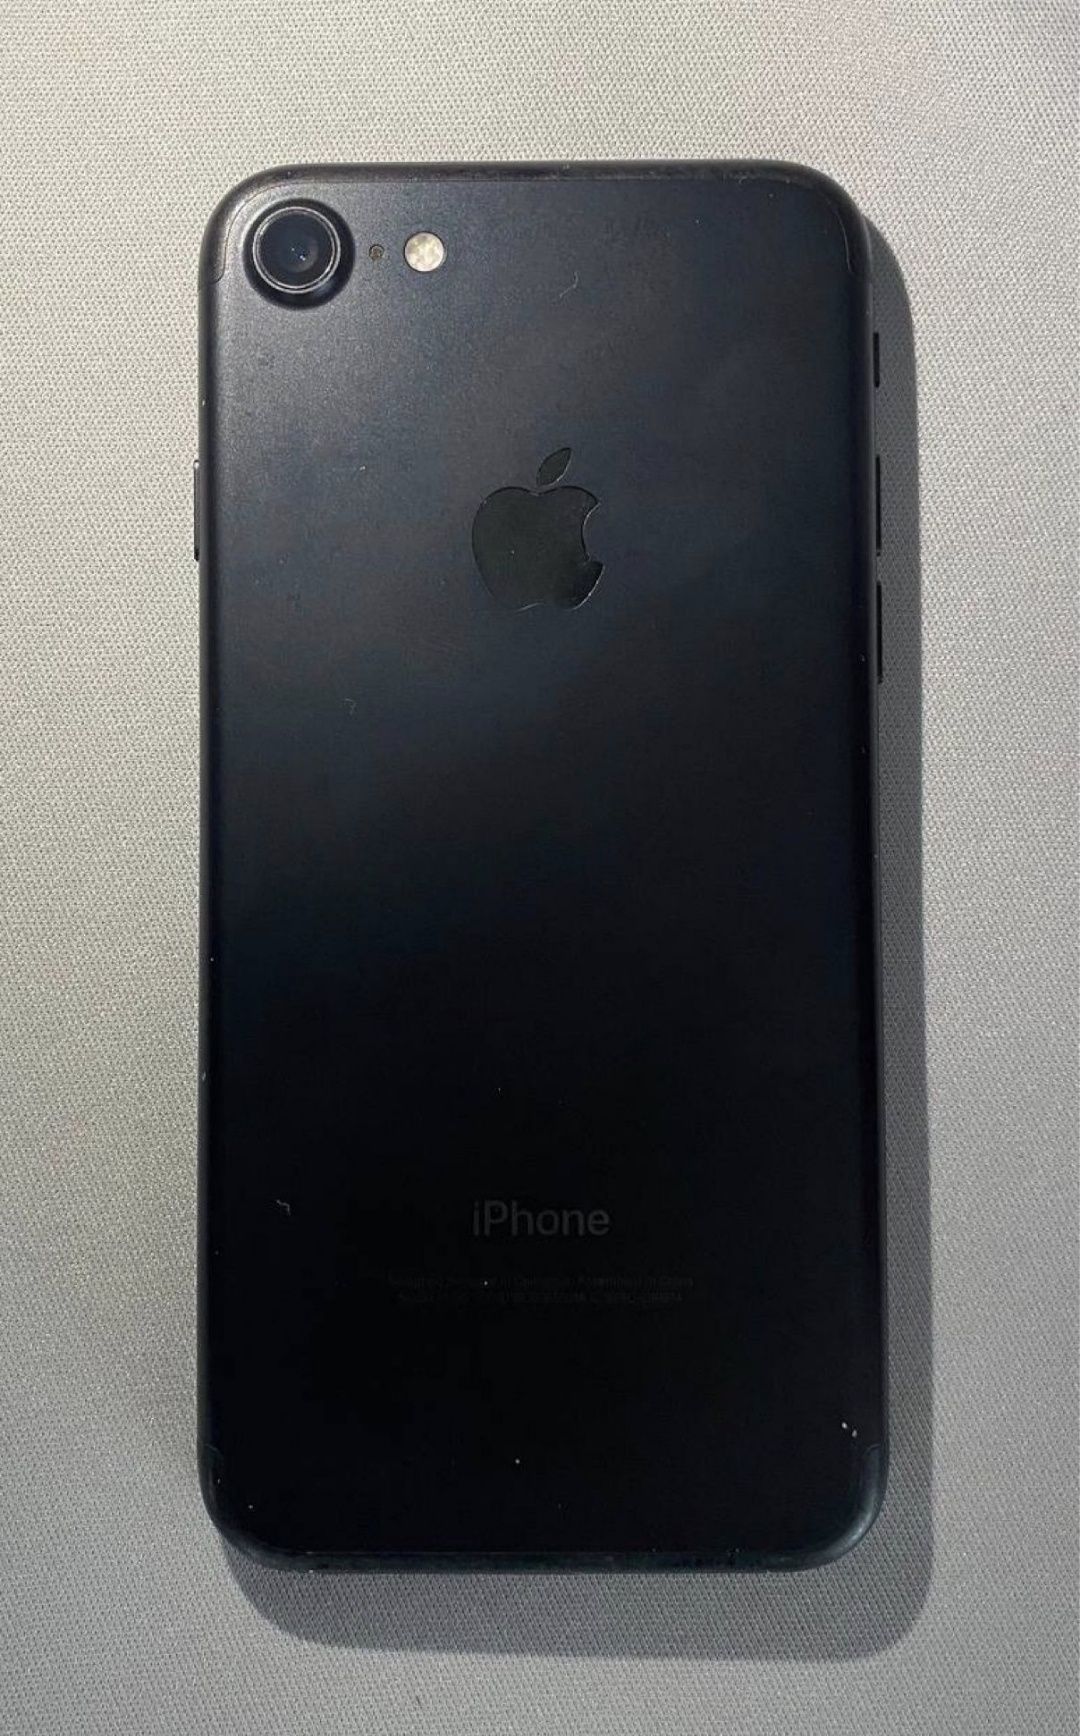 iPhone 7 128gb продам айфон в нормальном состоянии. Все видно на фото.